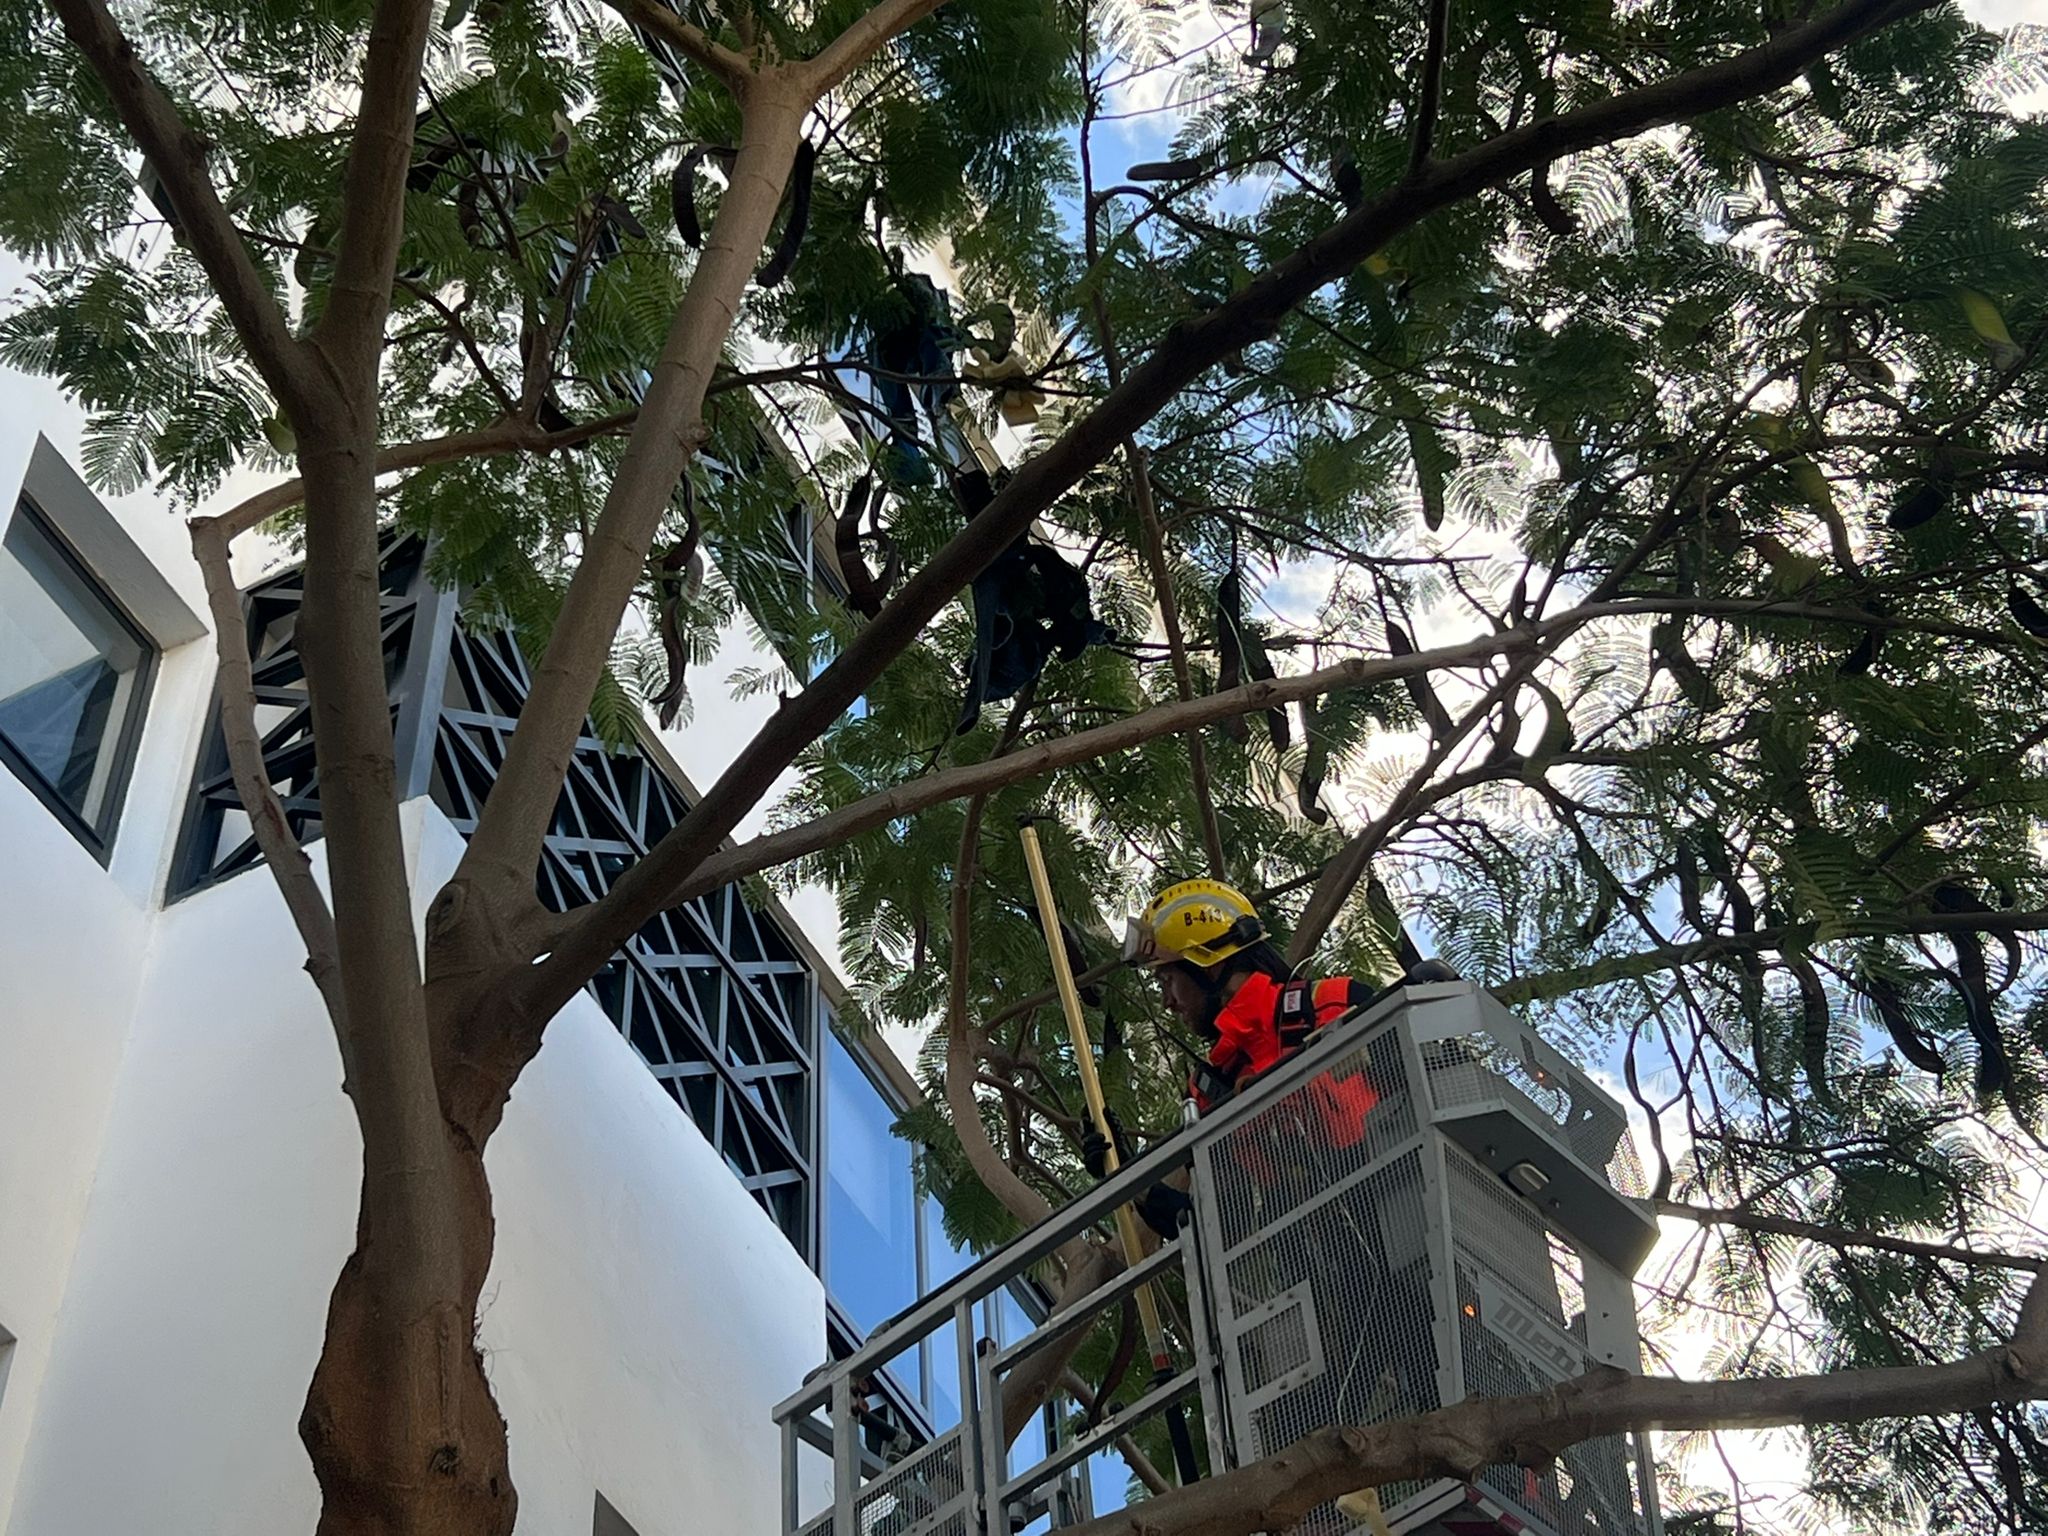 Bomberos retirando los objetos de la copa de un árbol